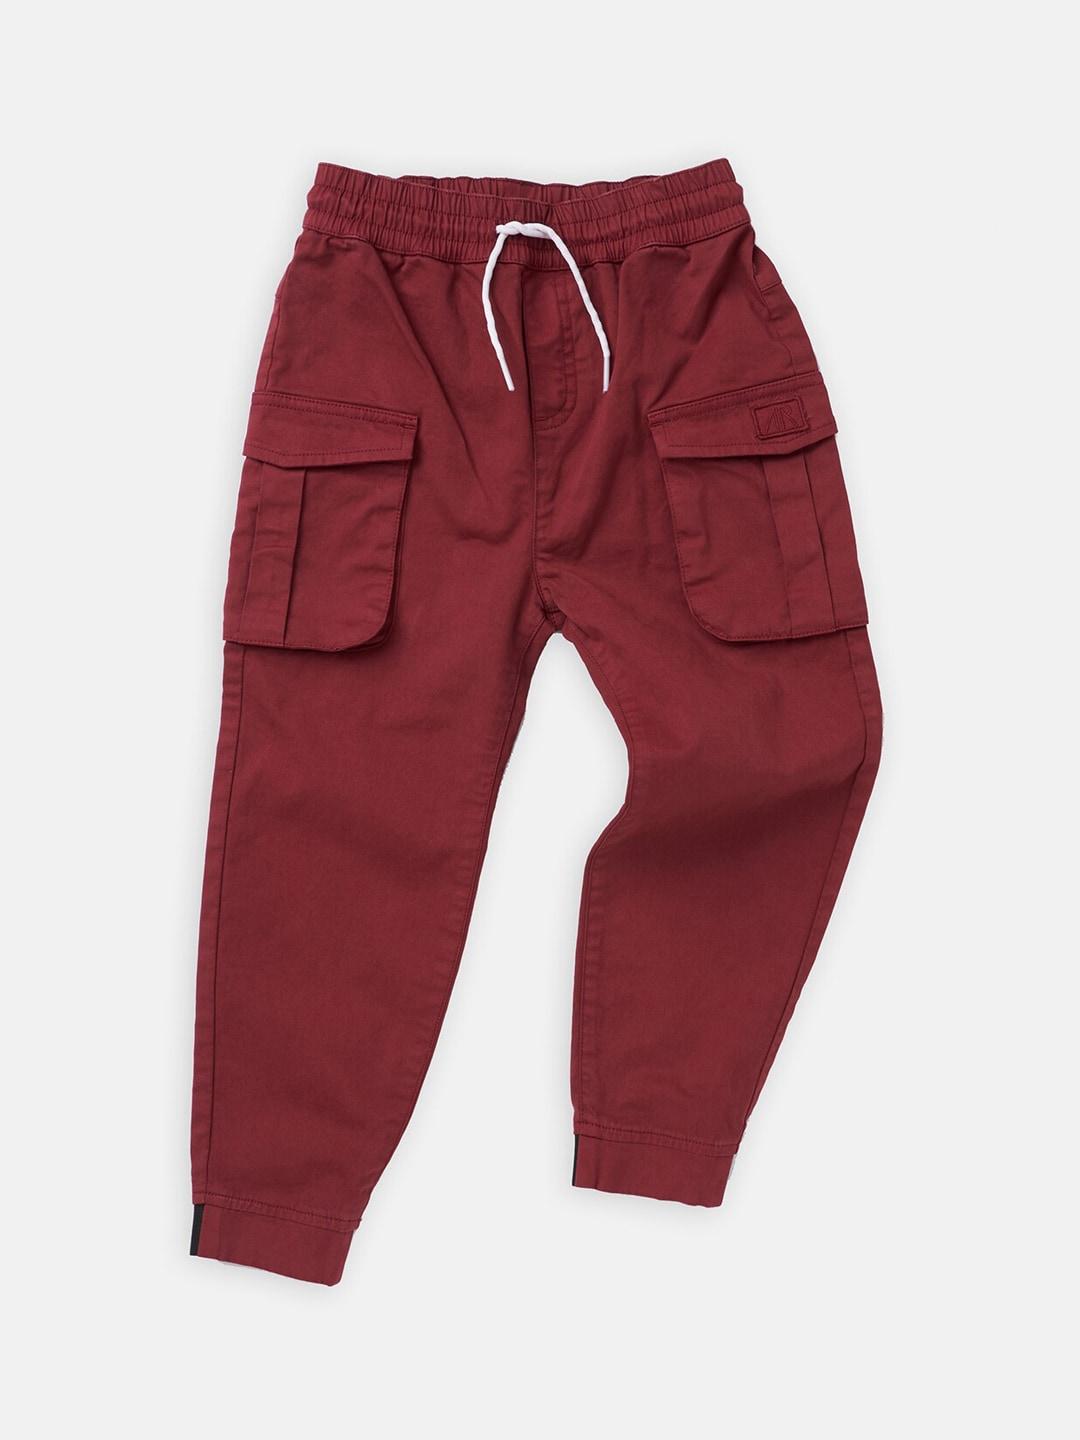 Angel & Rocket Boys Red Smart Cargos Trousers